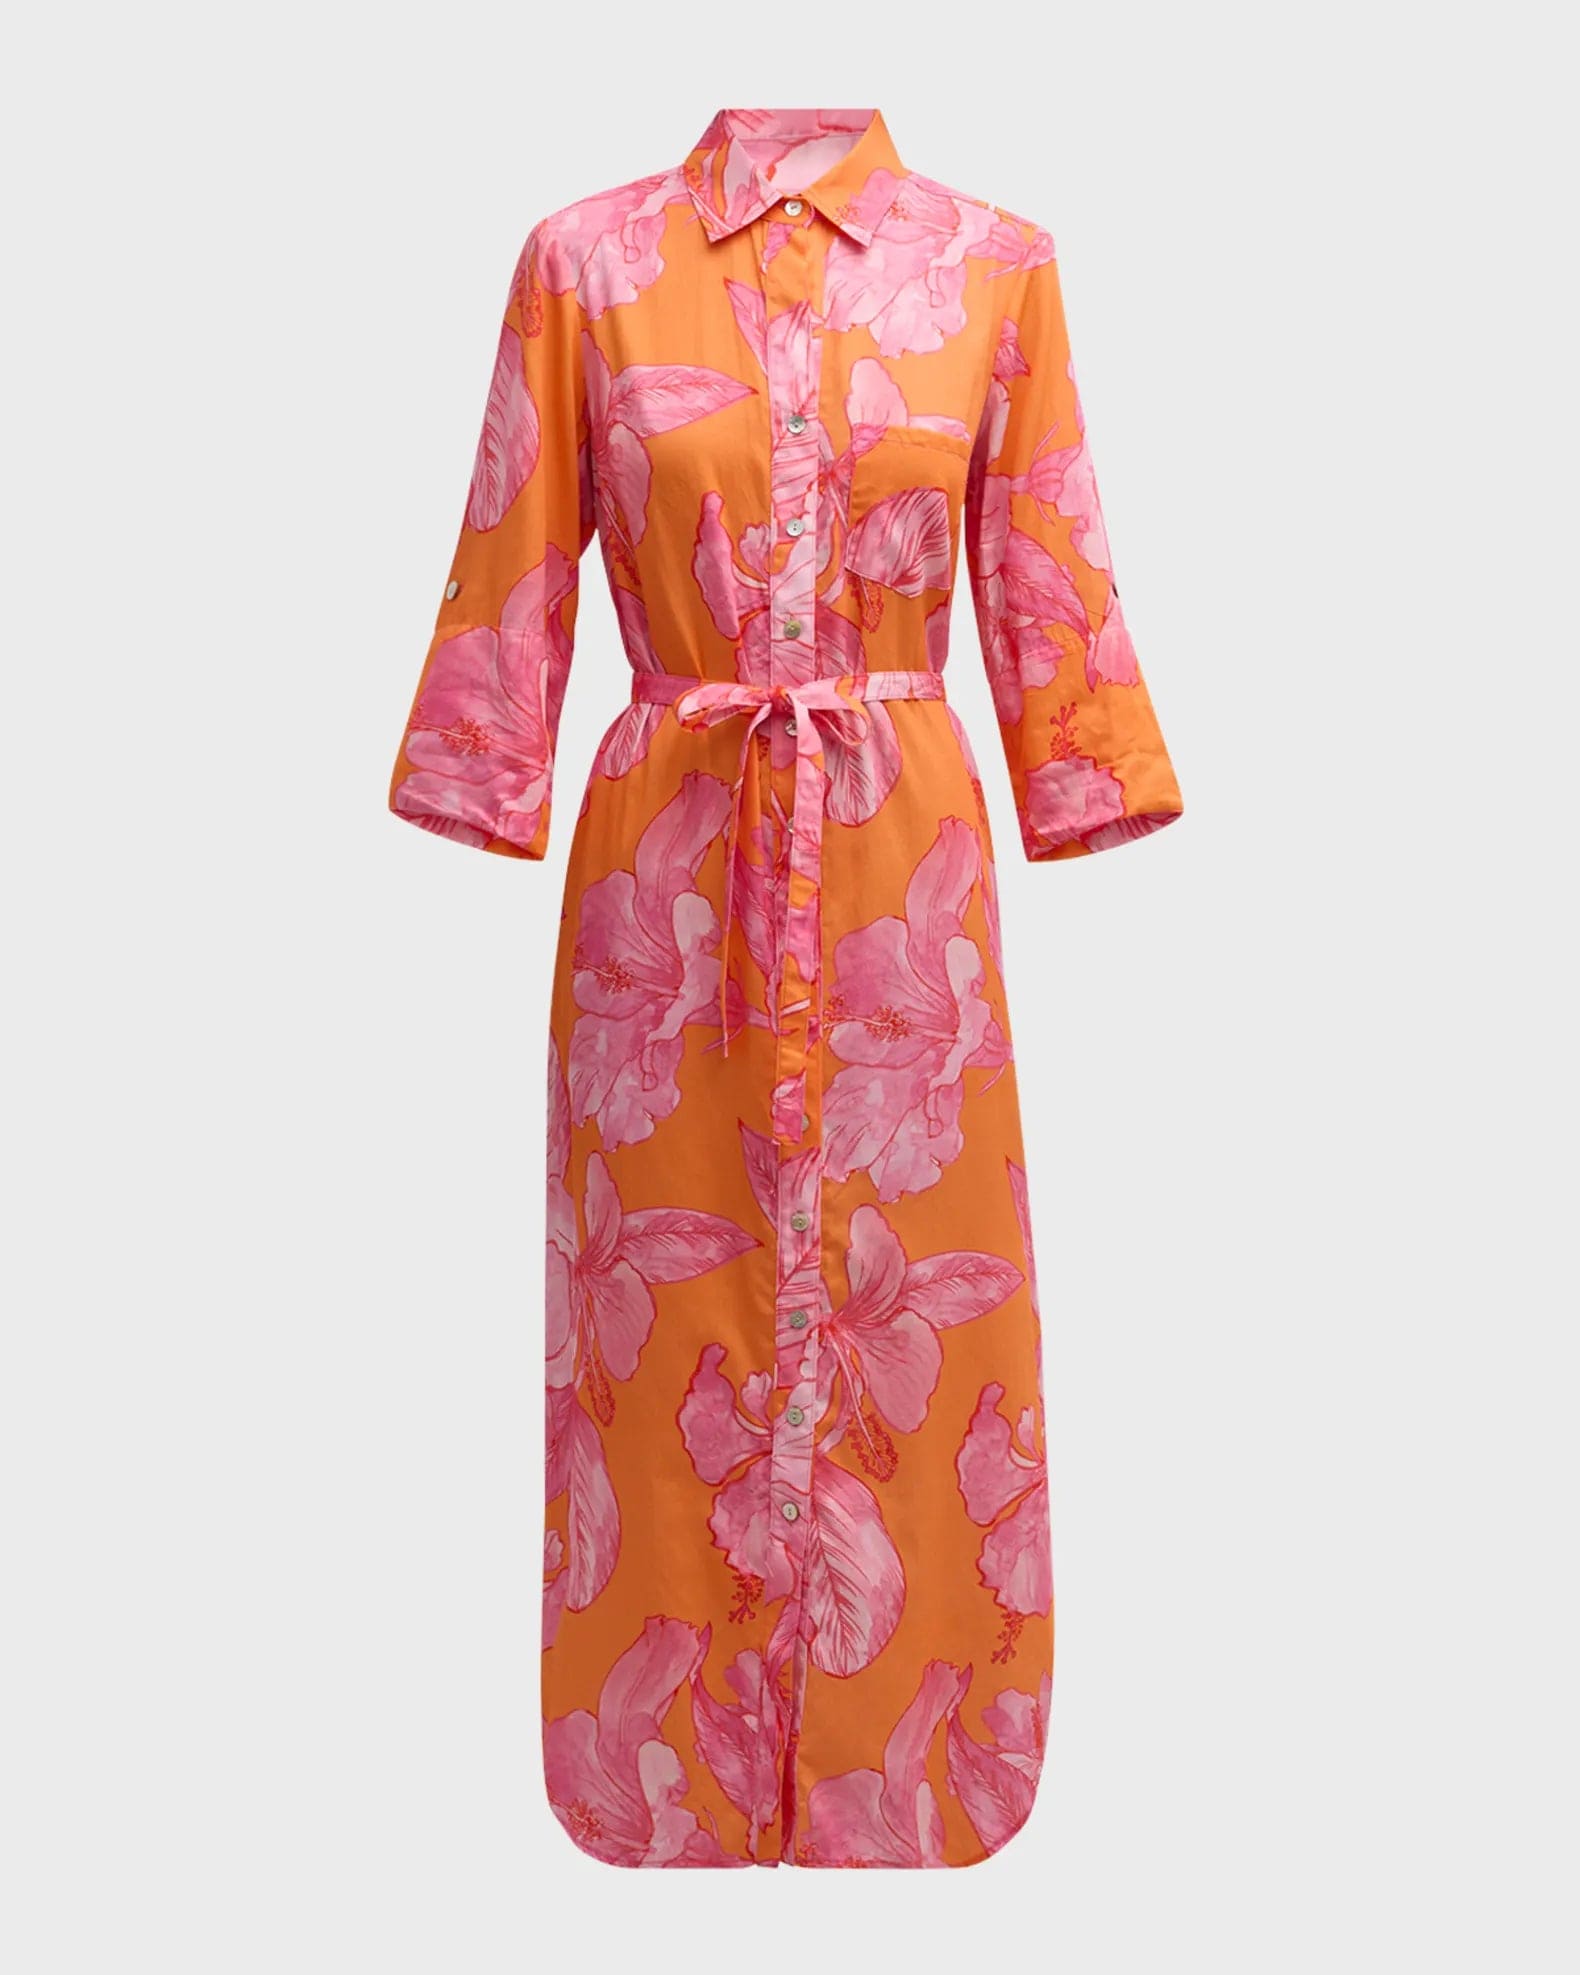 Finley Shirts Women's Dresses Orange/Pink / XS Finley Long Alex Shirtdress